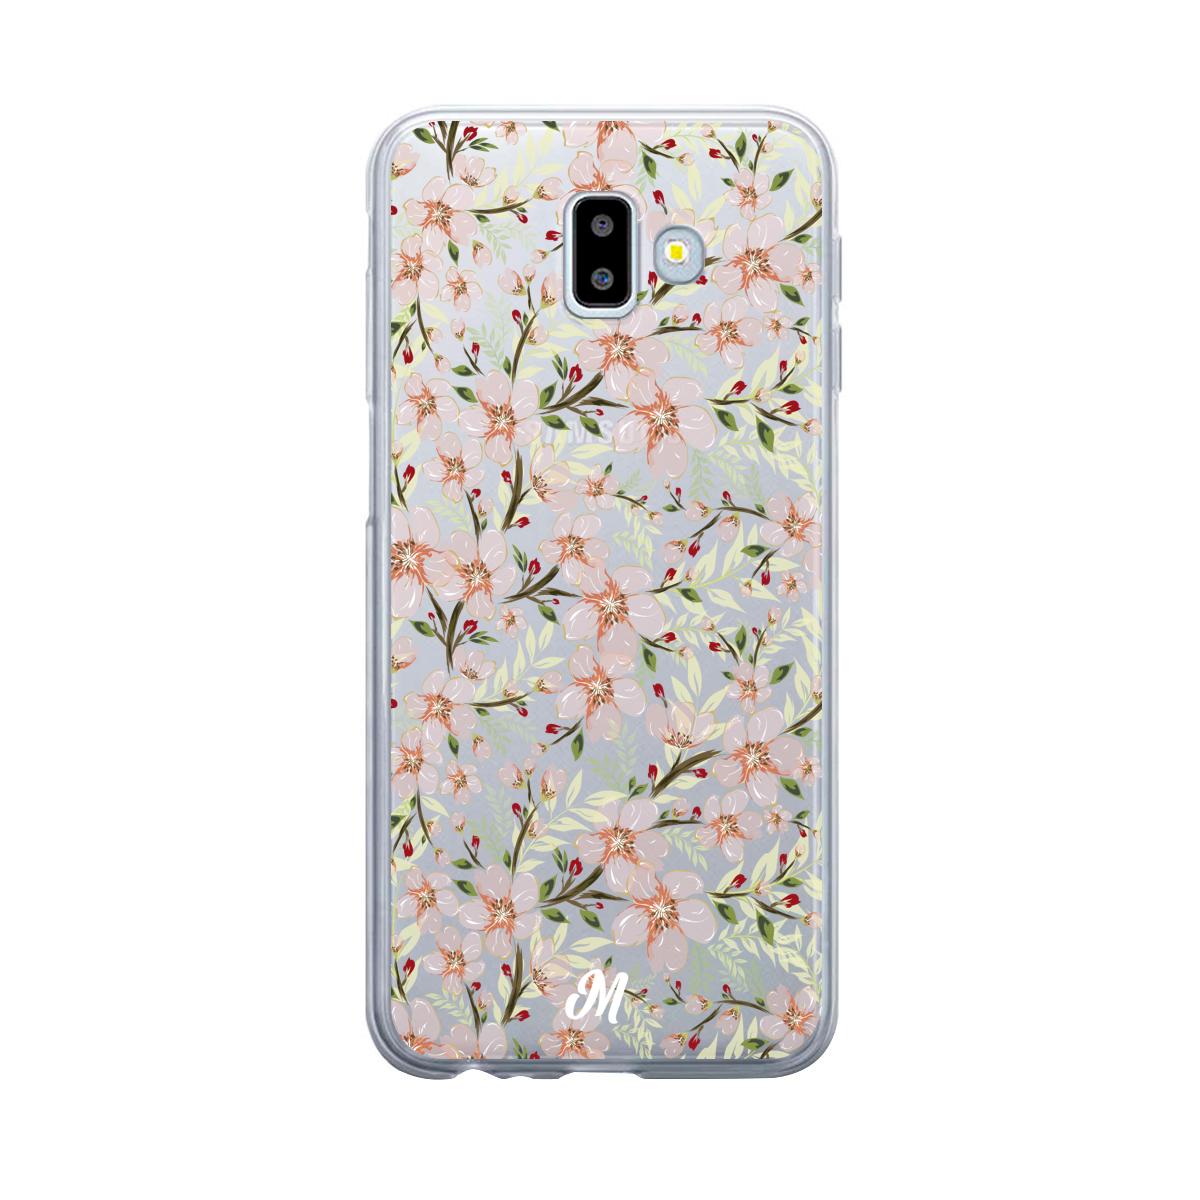 Estuches para Samsung J6 Plus - Flower Case  - Mandala Cases